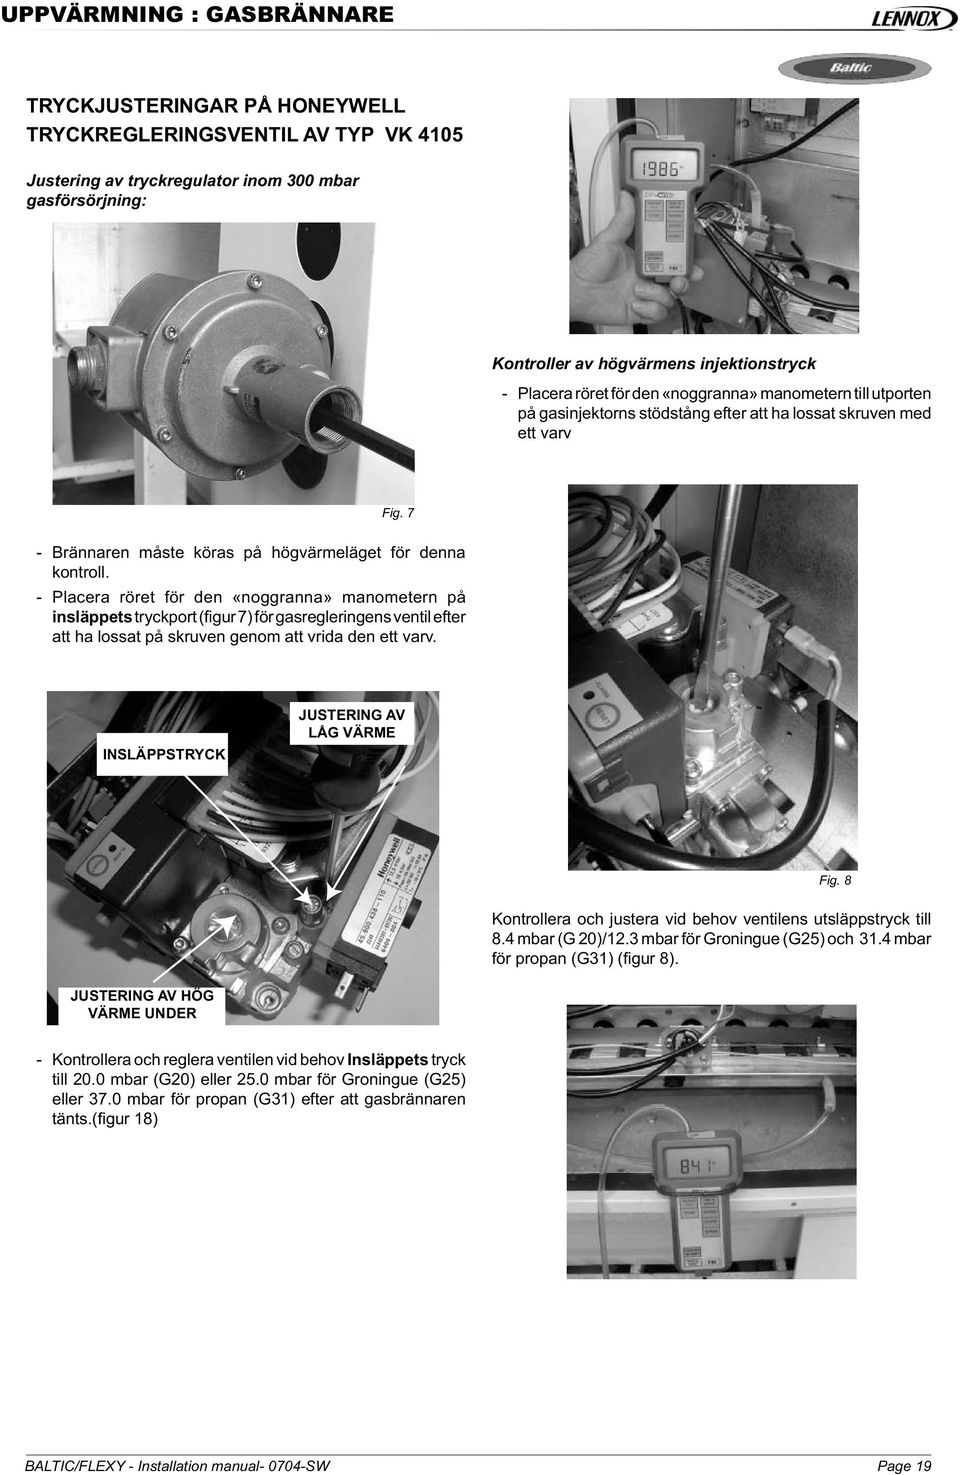 - Placera röret för den «noggranna» manometern på insläppets tryckport (figur 7) för gasregleringens ventil efter att ha lossat på skruven genom att vrida den ett varv.